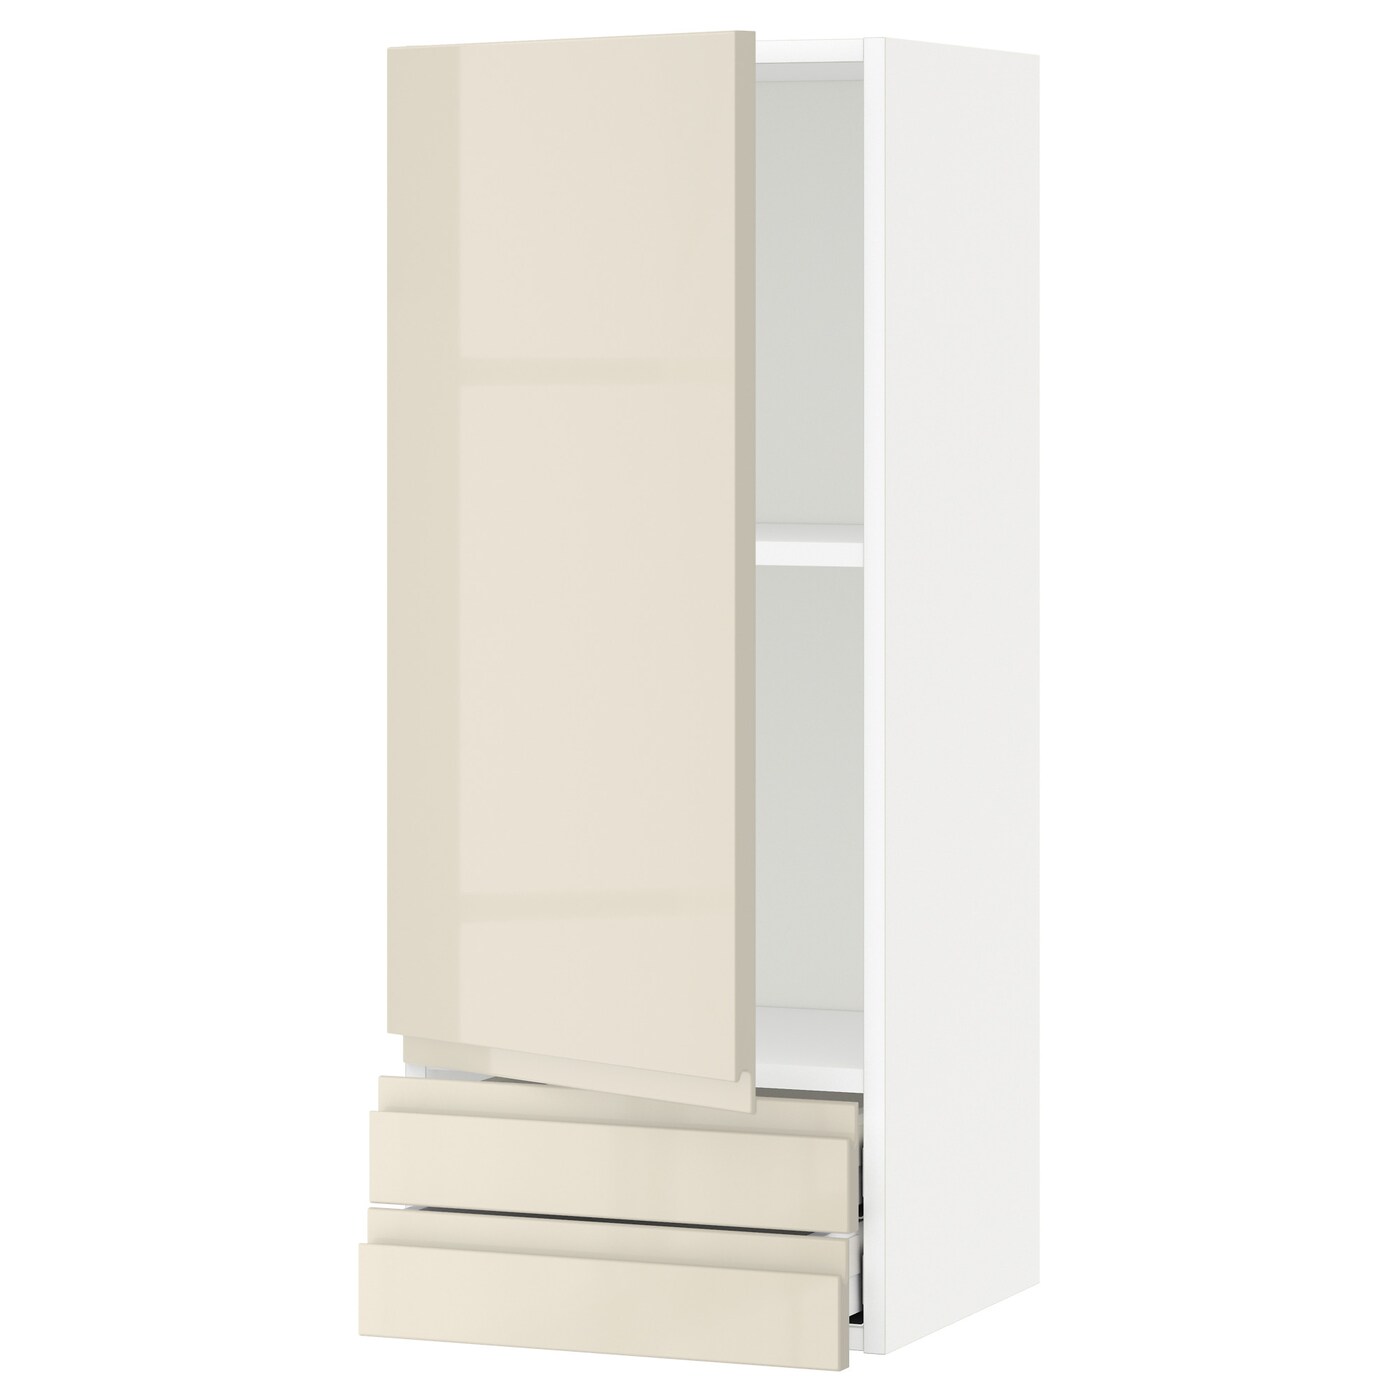 Навесной шкаф с полкой - METOD/MAXIMERA  IKEA/ МЕТОД /МАКСИМЕРА ИКЕА, 100х40 см, белый/бежевый